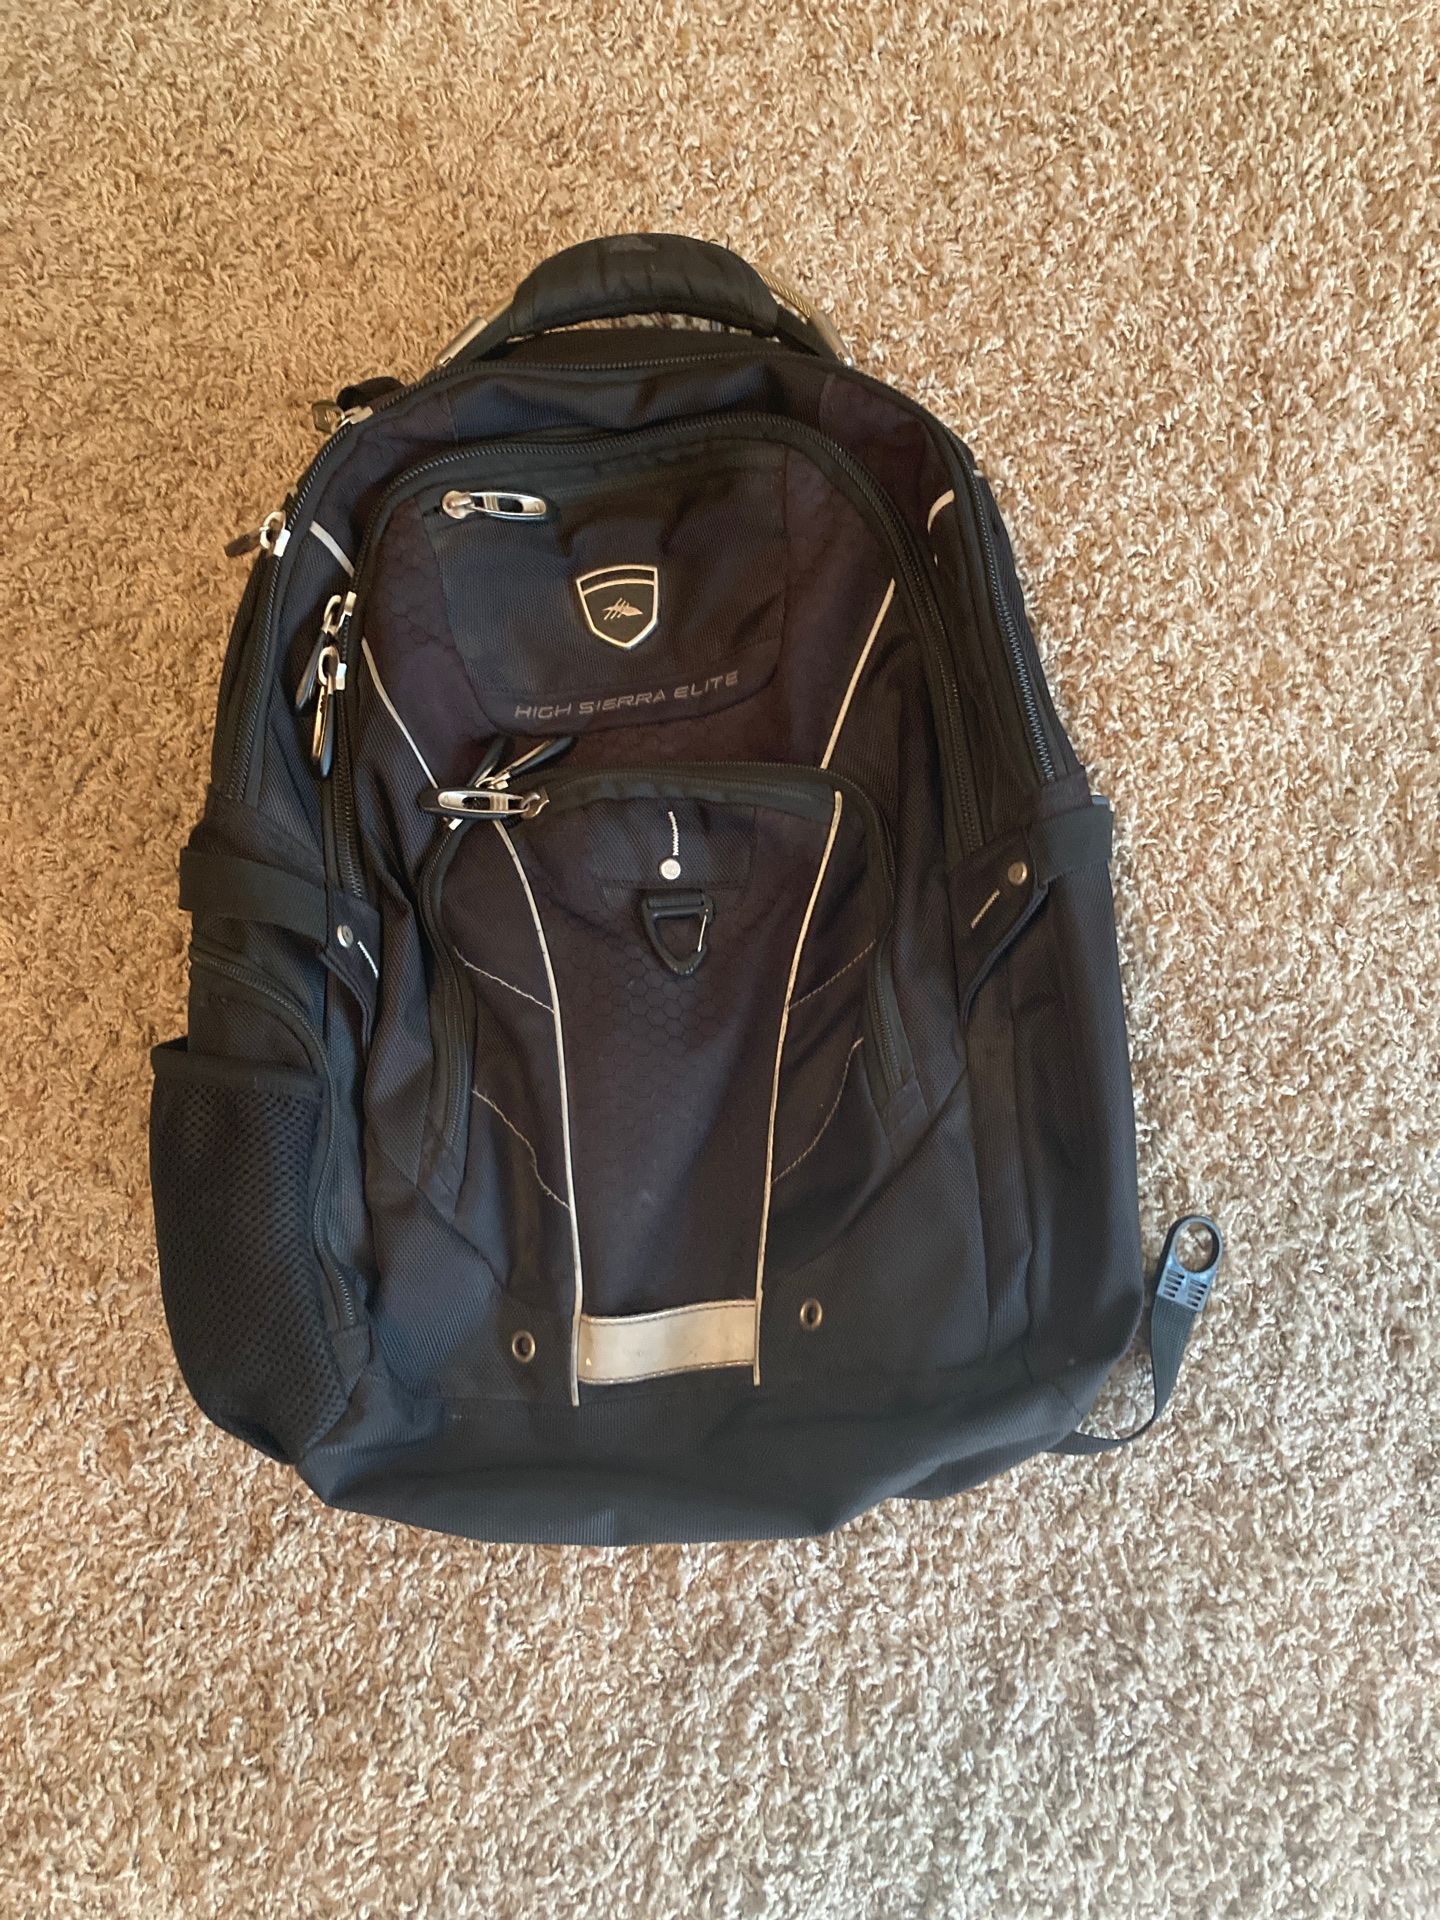 High Sierra Elite laptop backpack